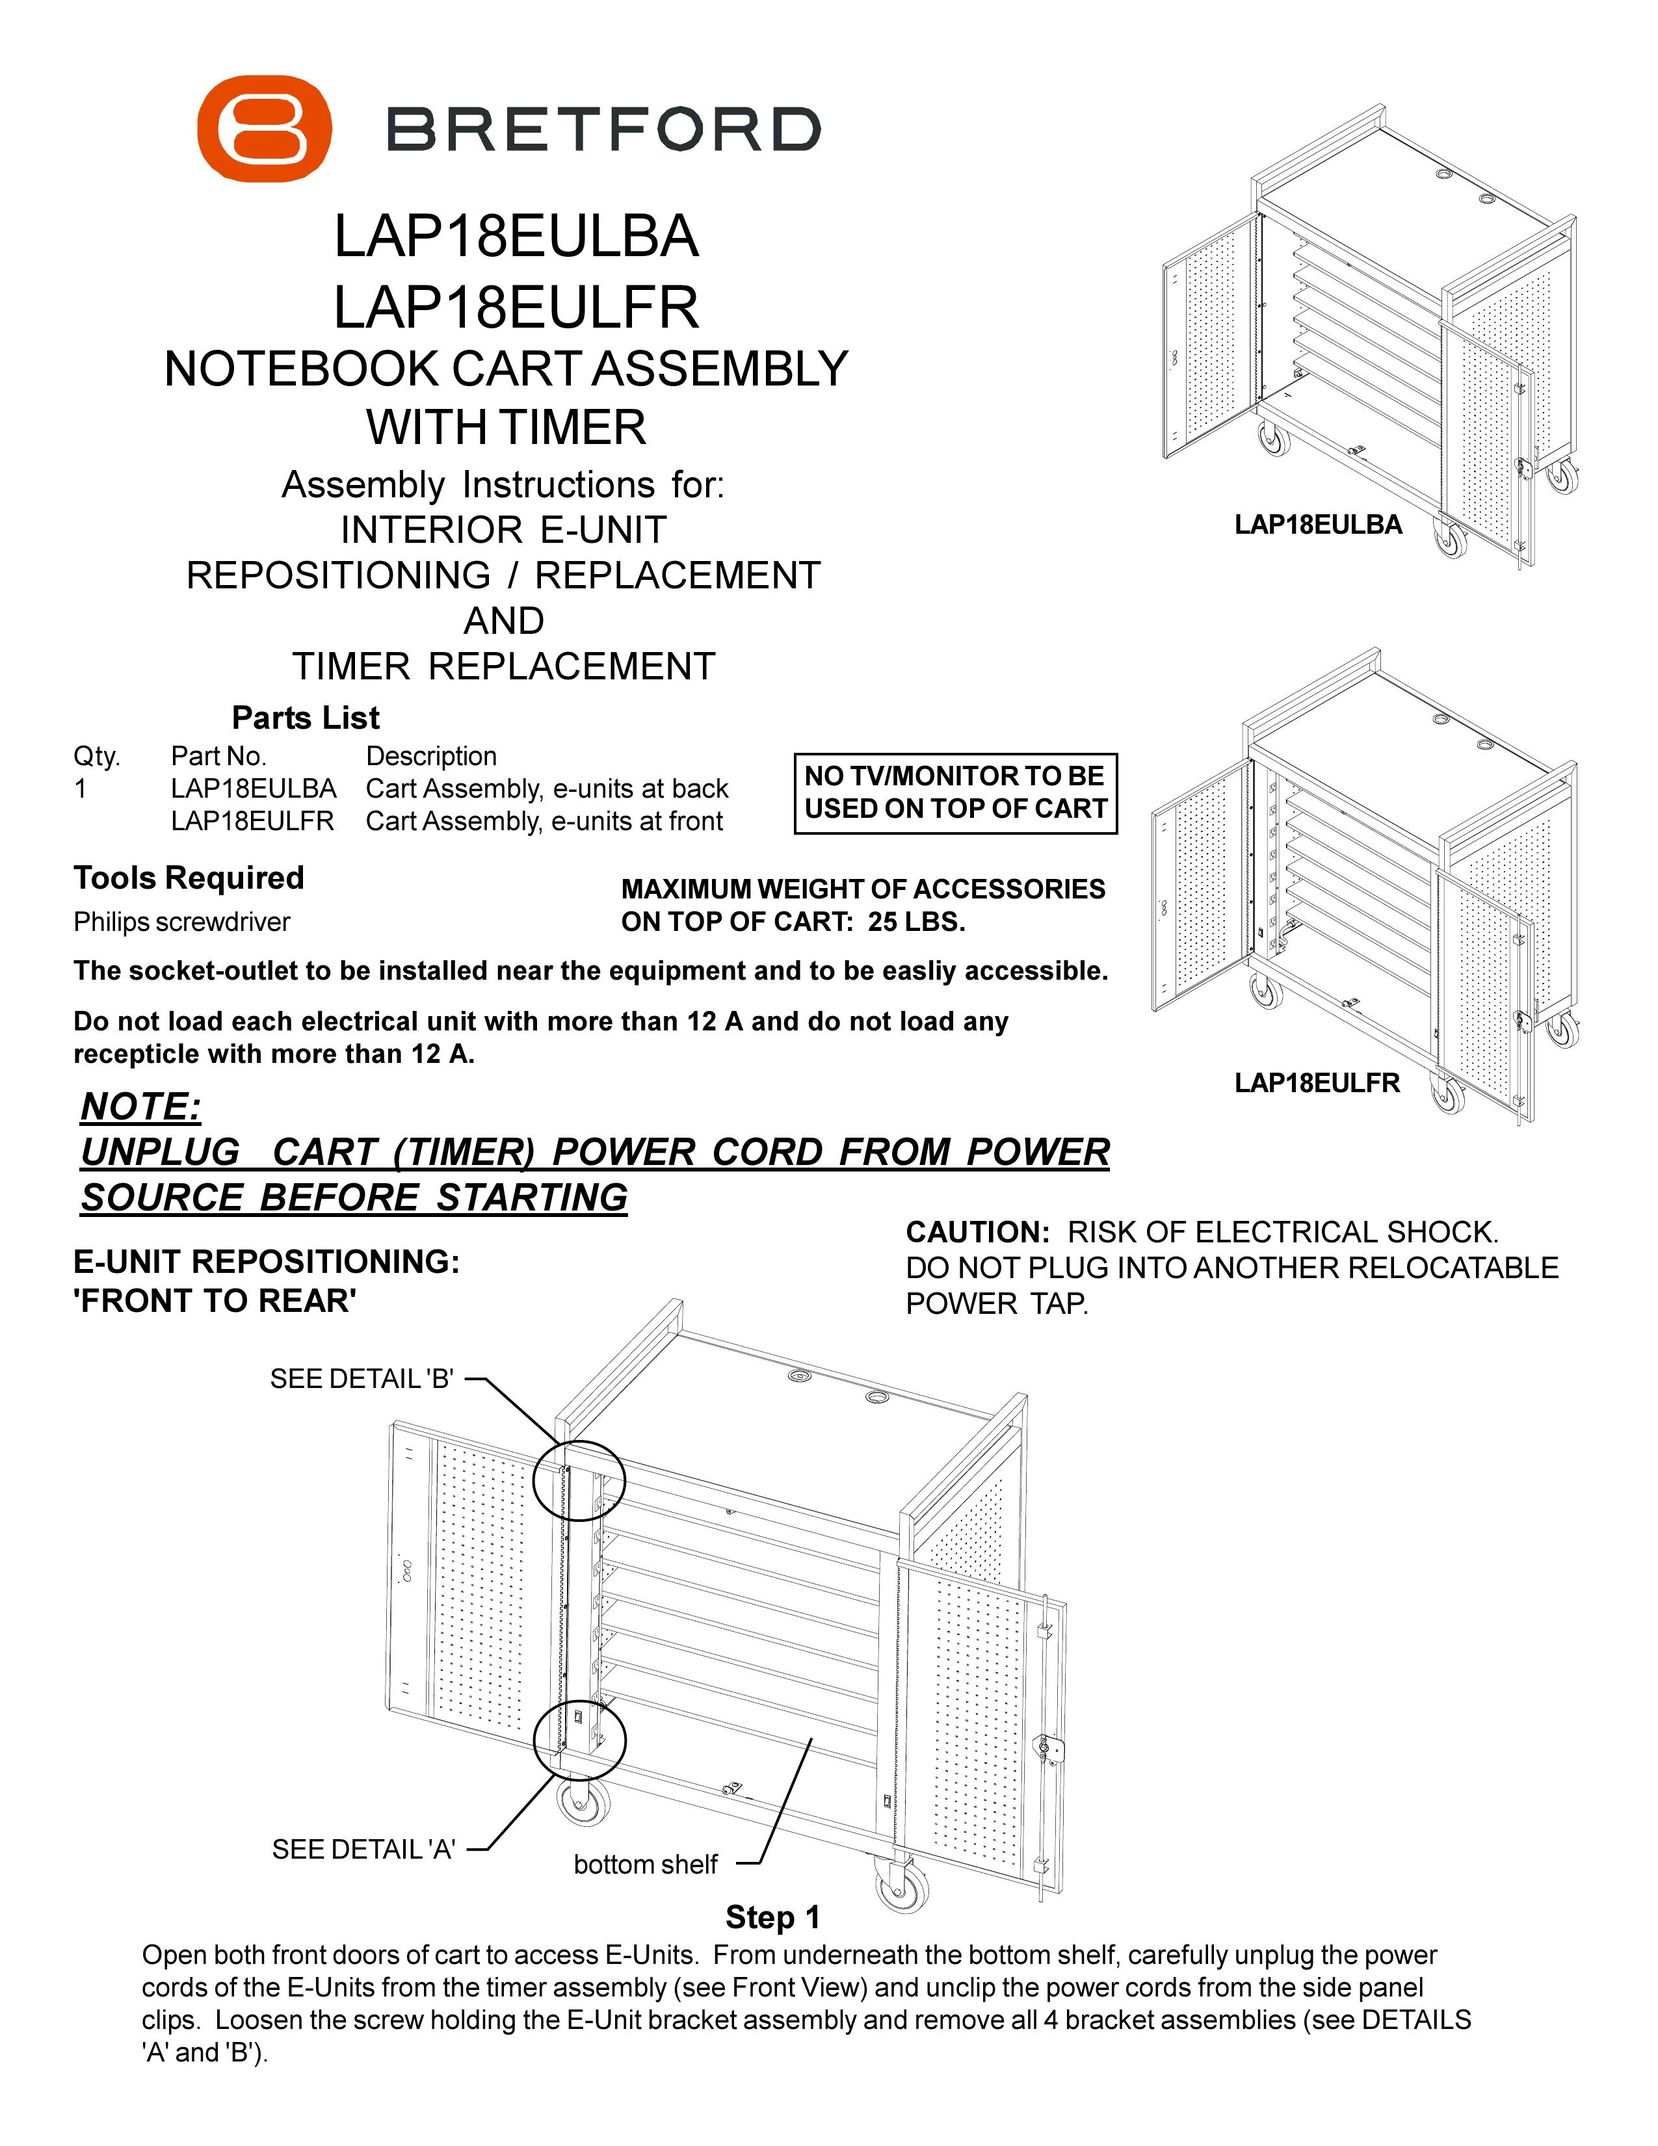 Bretford lap18eulba Indoor Furnishings User Manual